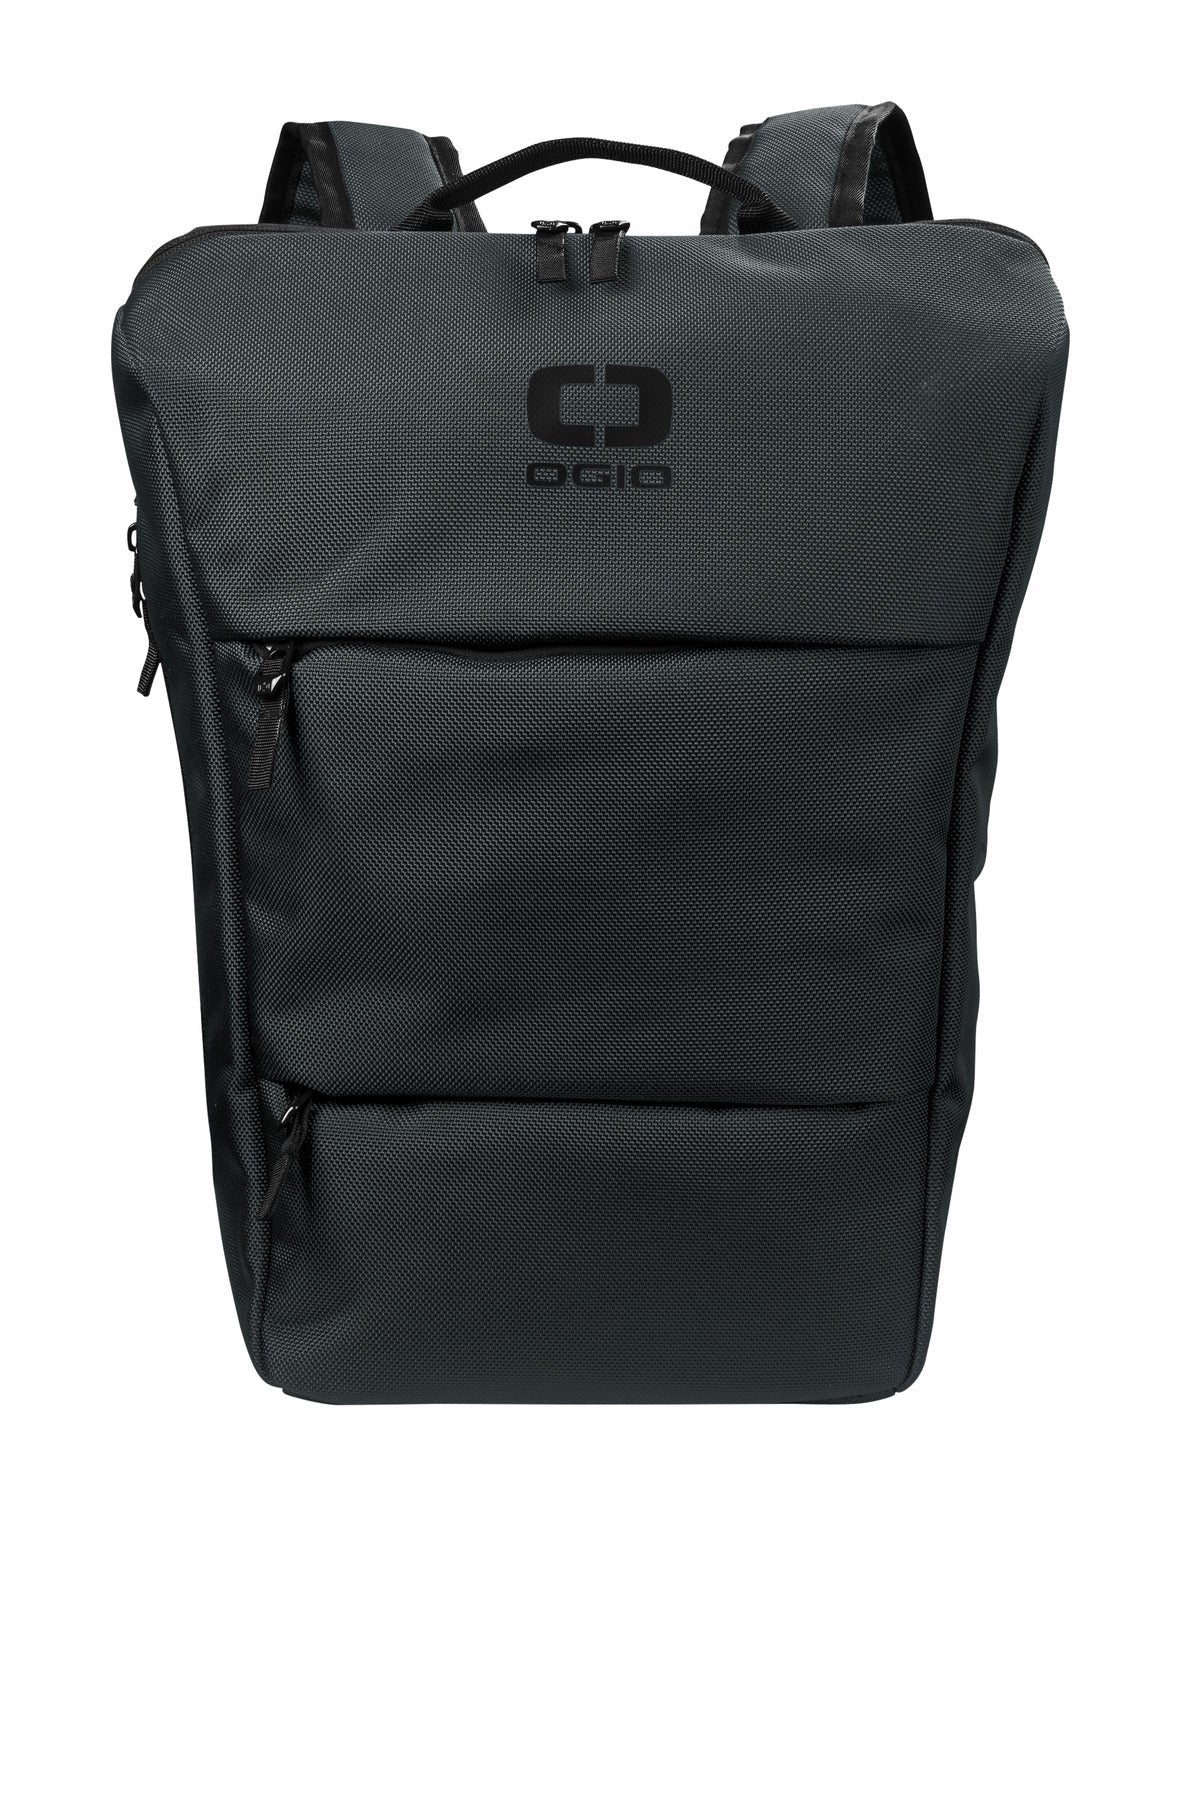 OGIO® Sprint Pack 92001 - DFW Impression